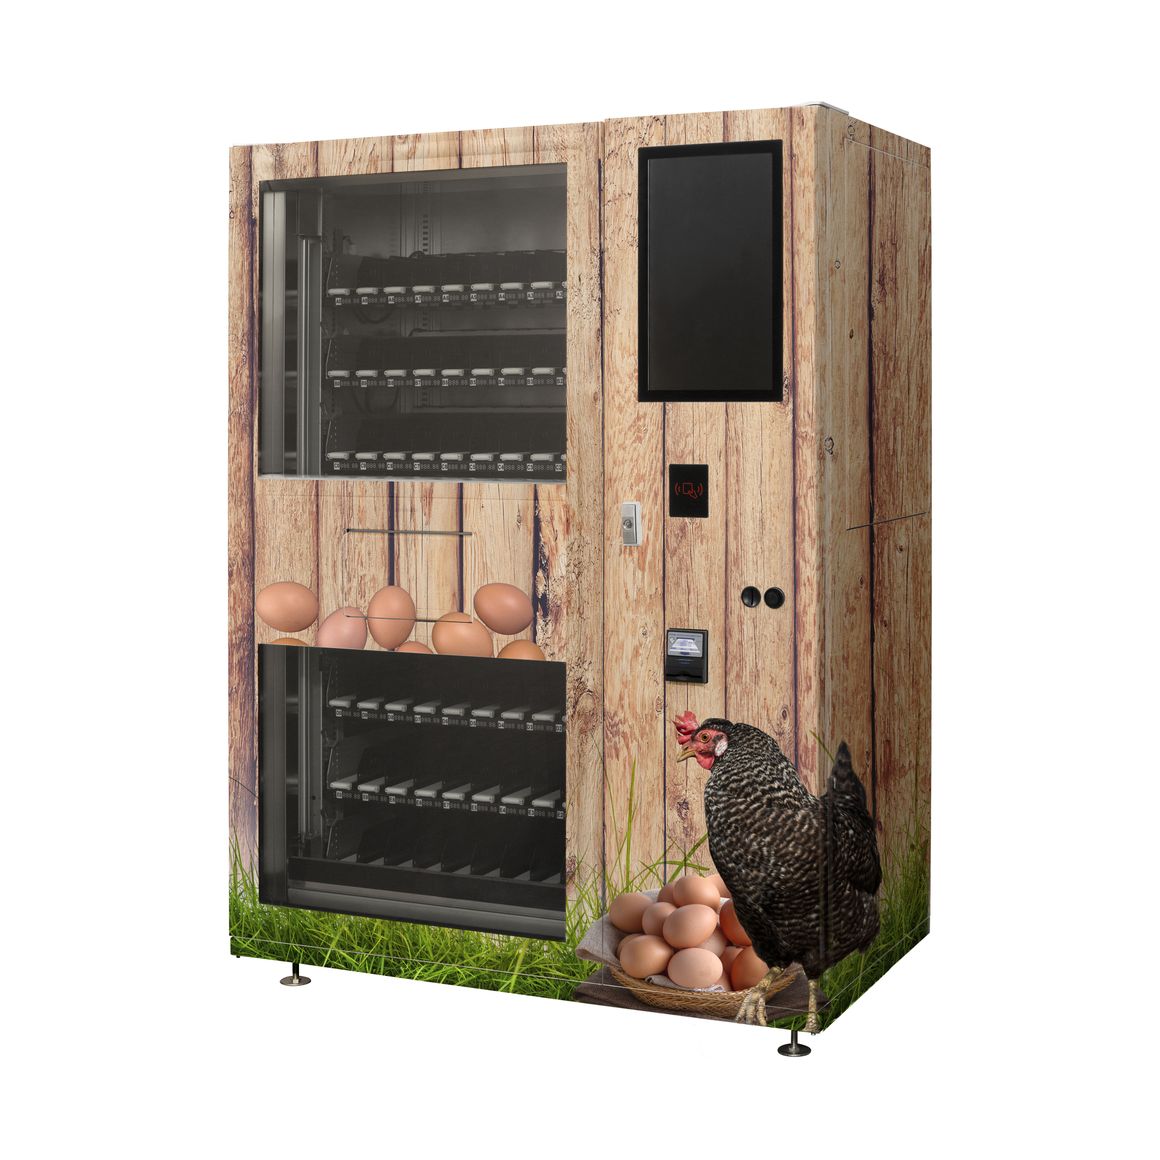 Verkaufsautomat „Lemgo“ als Eierautomat